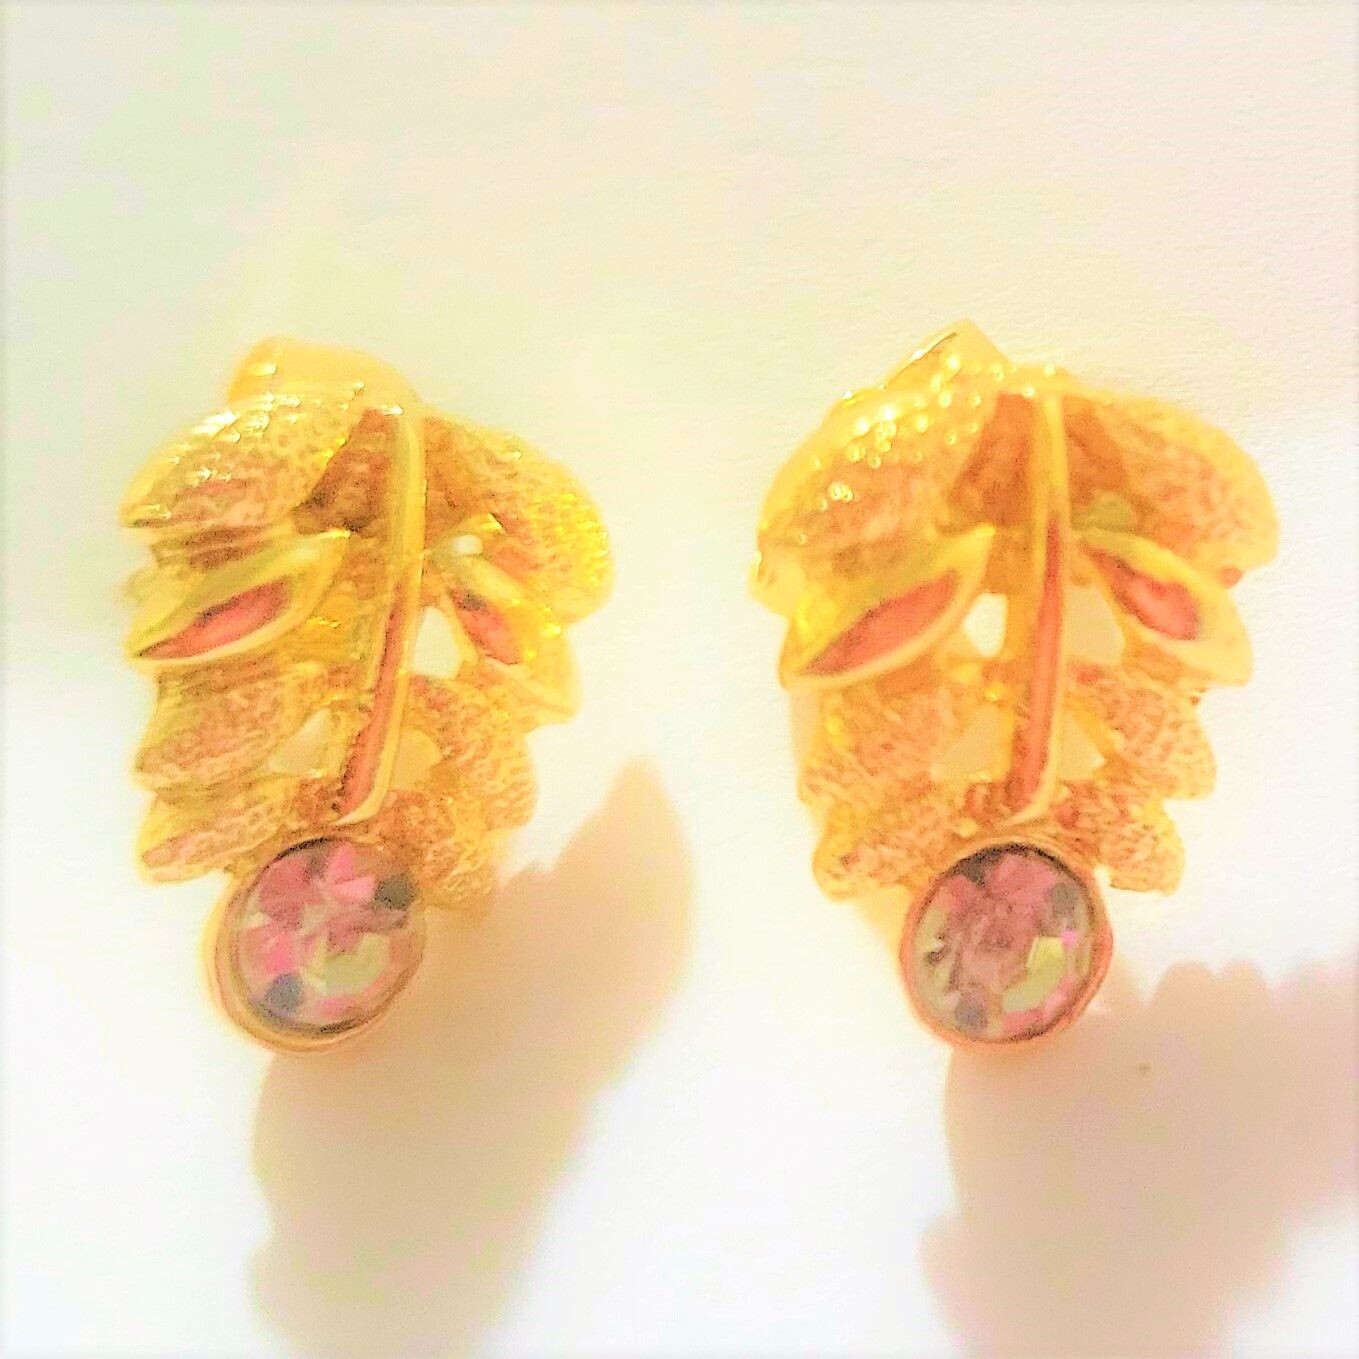 Gold Plated Stud Earrings for Women Girls Cute CZ Heart Lightning Blot Leaf Gold Stud Earrings. Earring for Birthday Halloween Christmas Gift